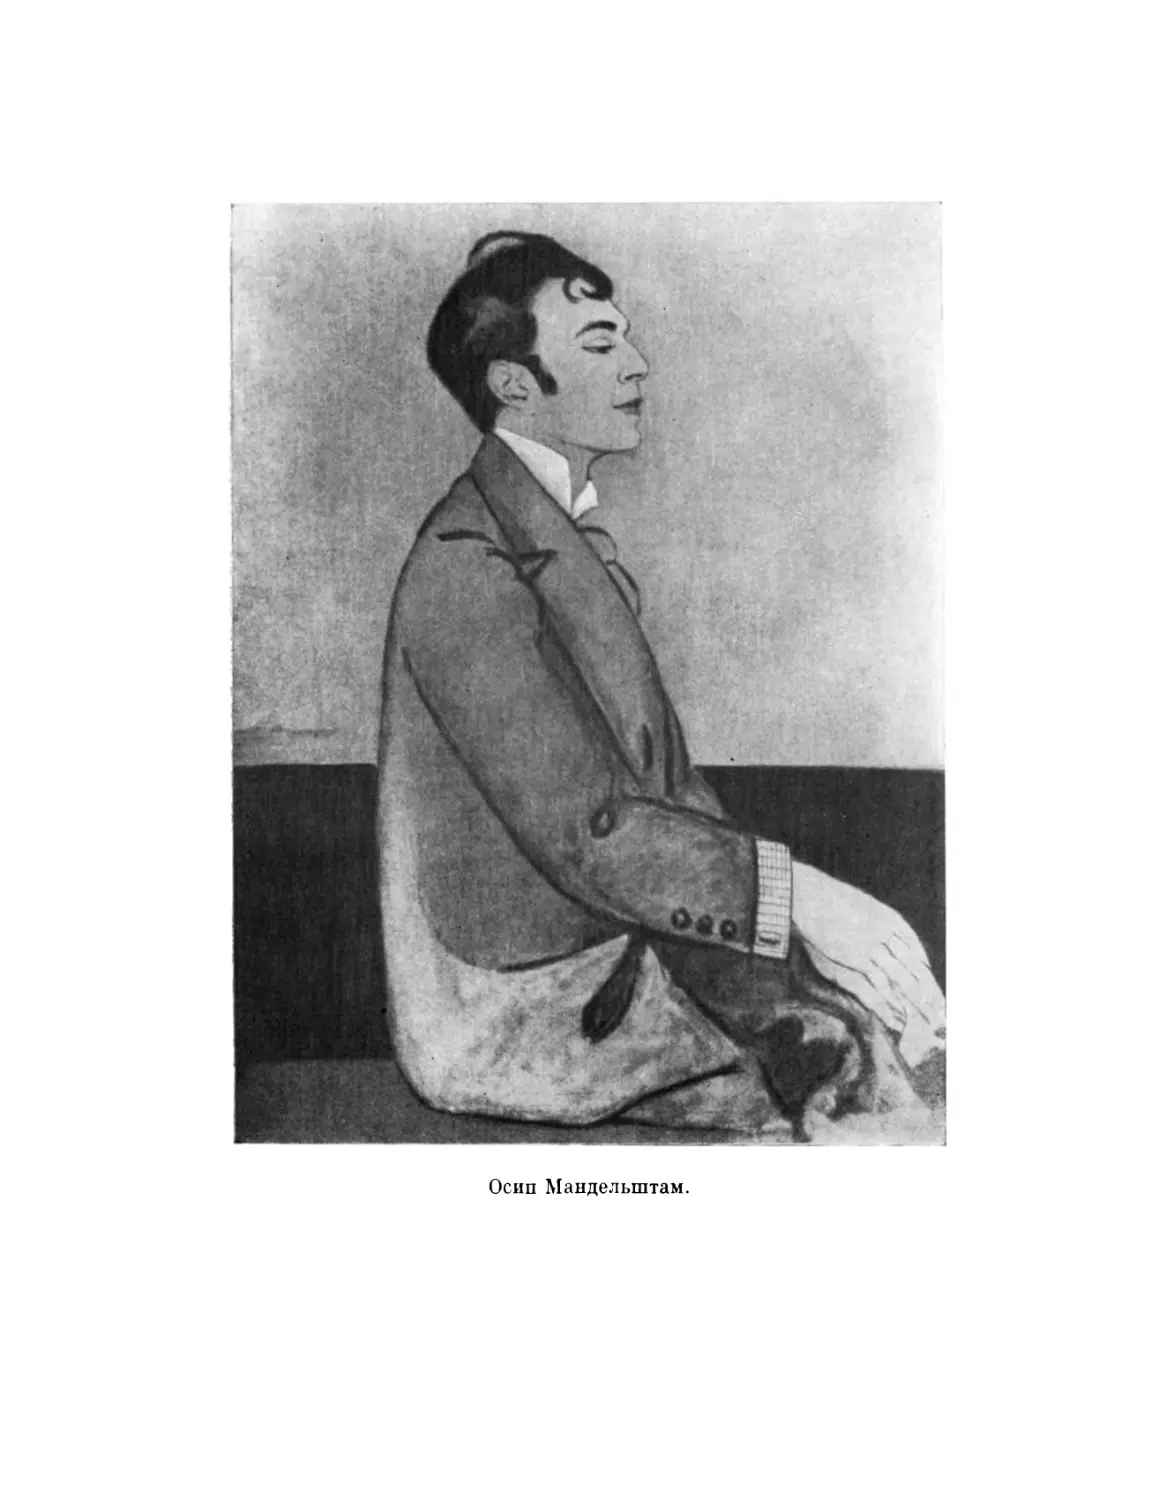 Осип Мандельштам. 1914 г. С портрета А. Зельмановой